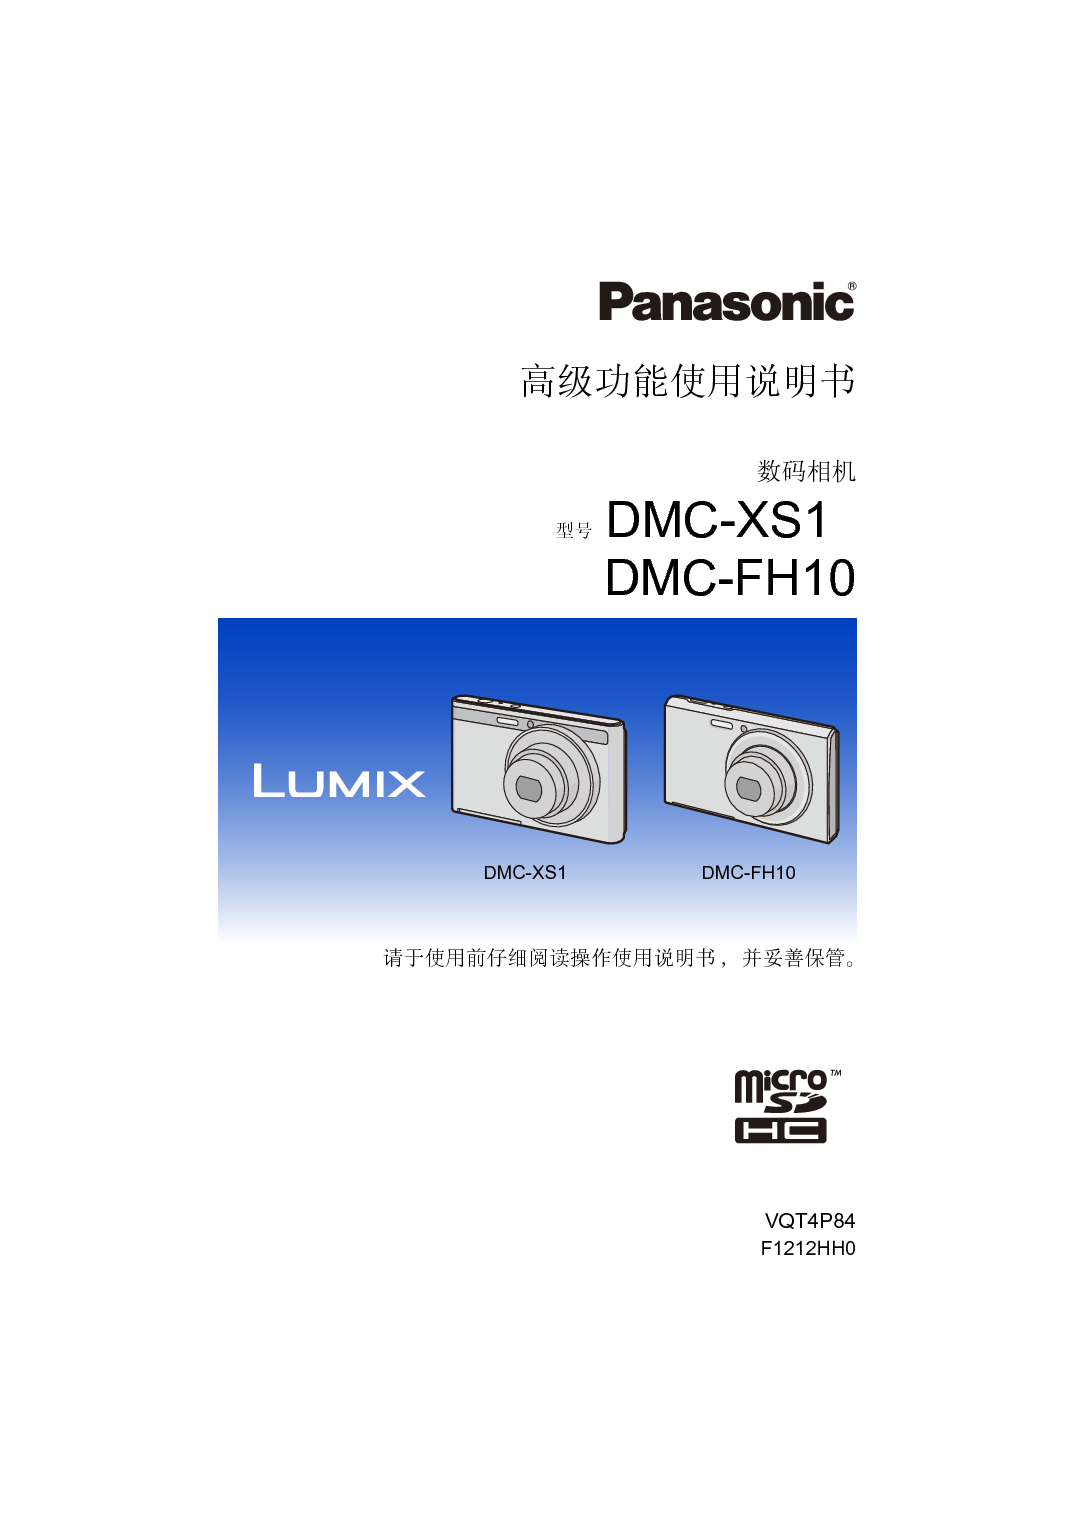 松下 Panasonic DMC-FH10GK 高级说明书 封面